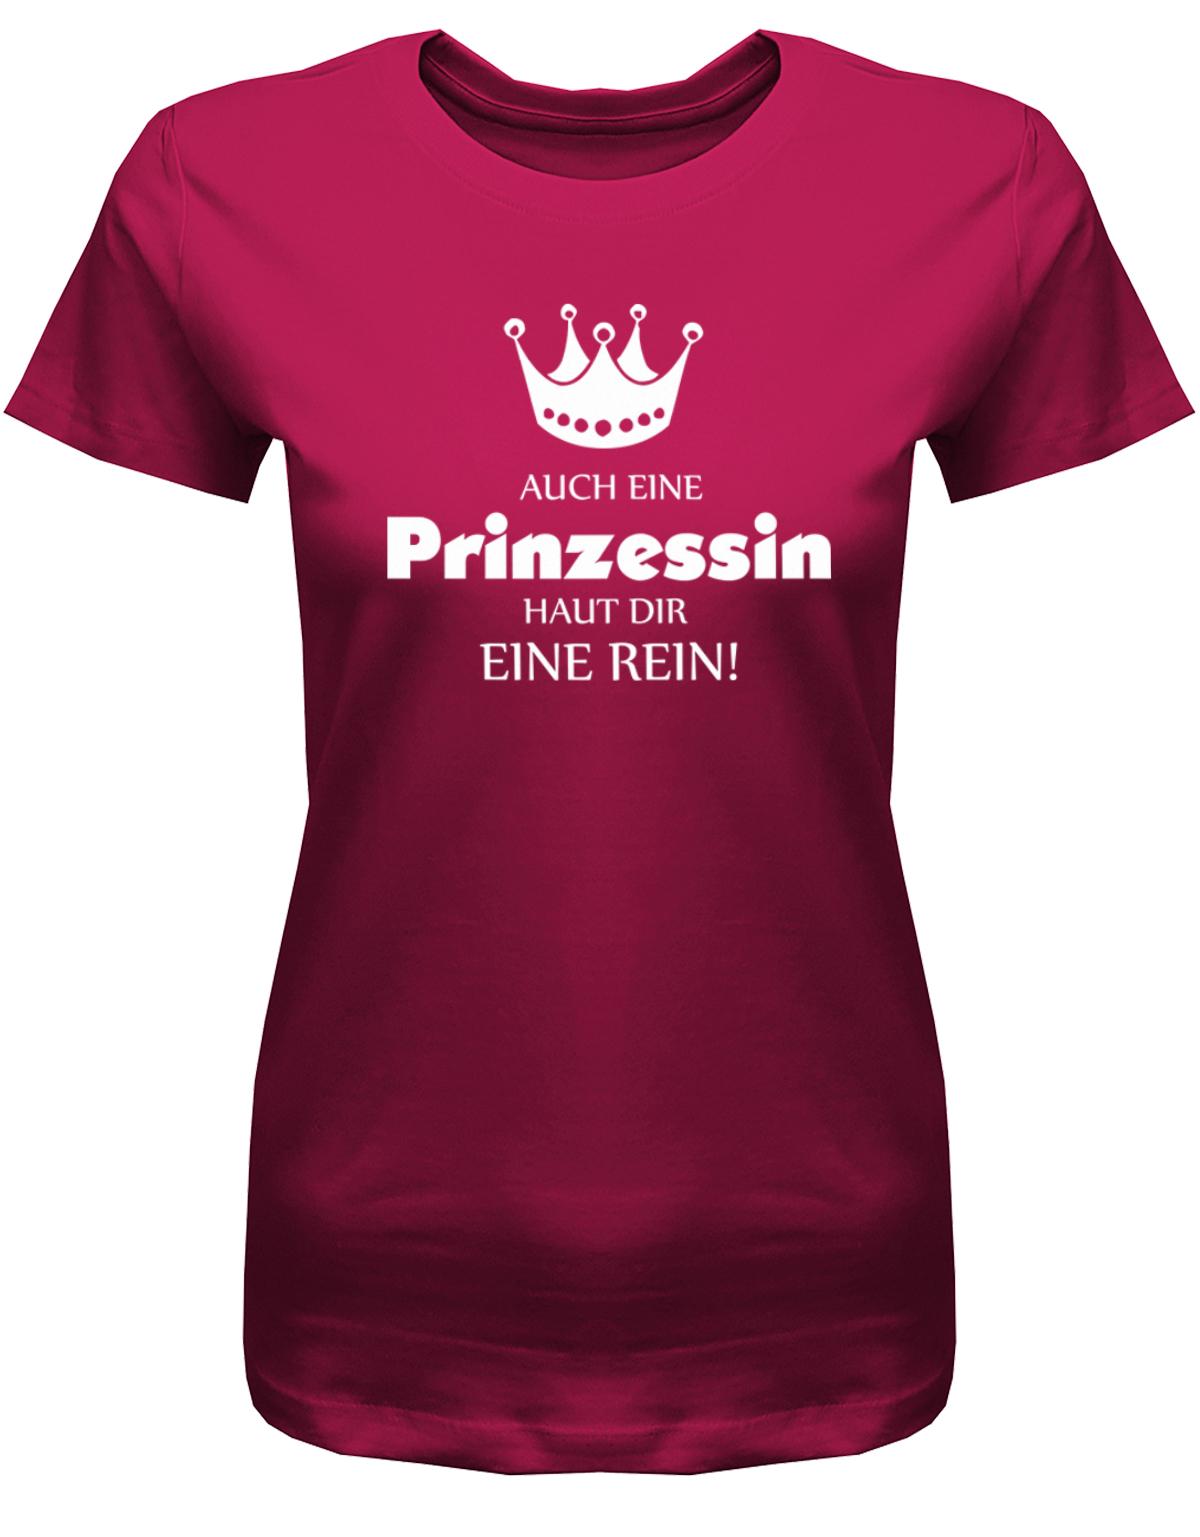 Auch-eine-Prinzessin-haut-dir-eine-rein-Damen-Shirt-Sorbet